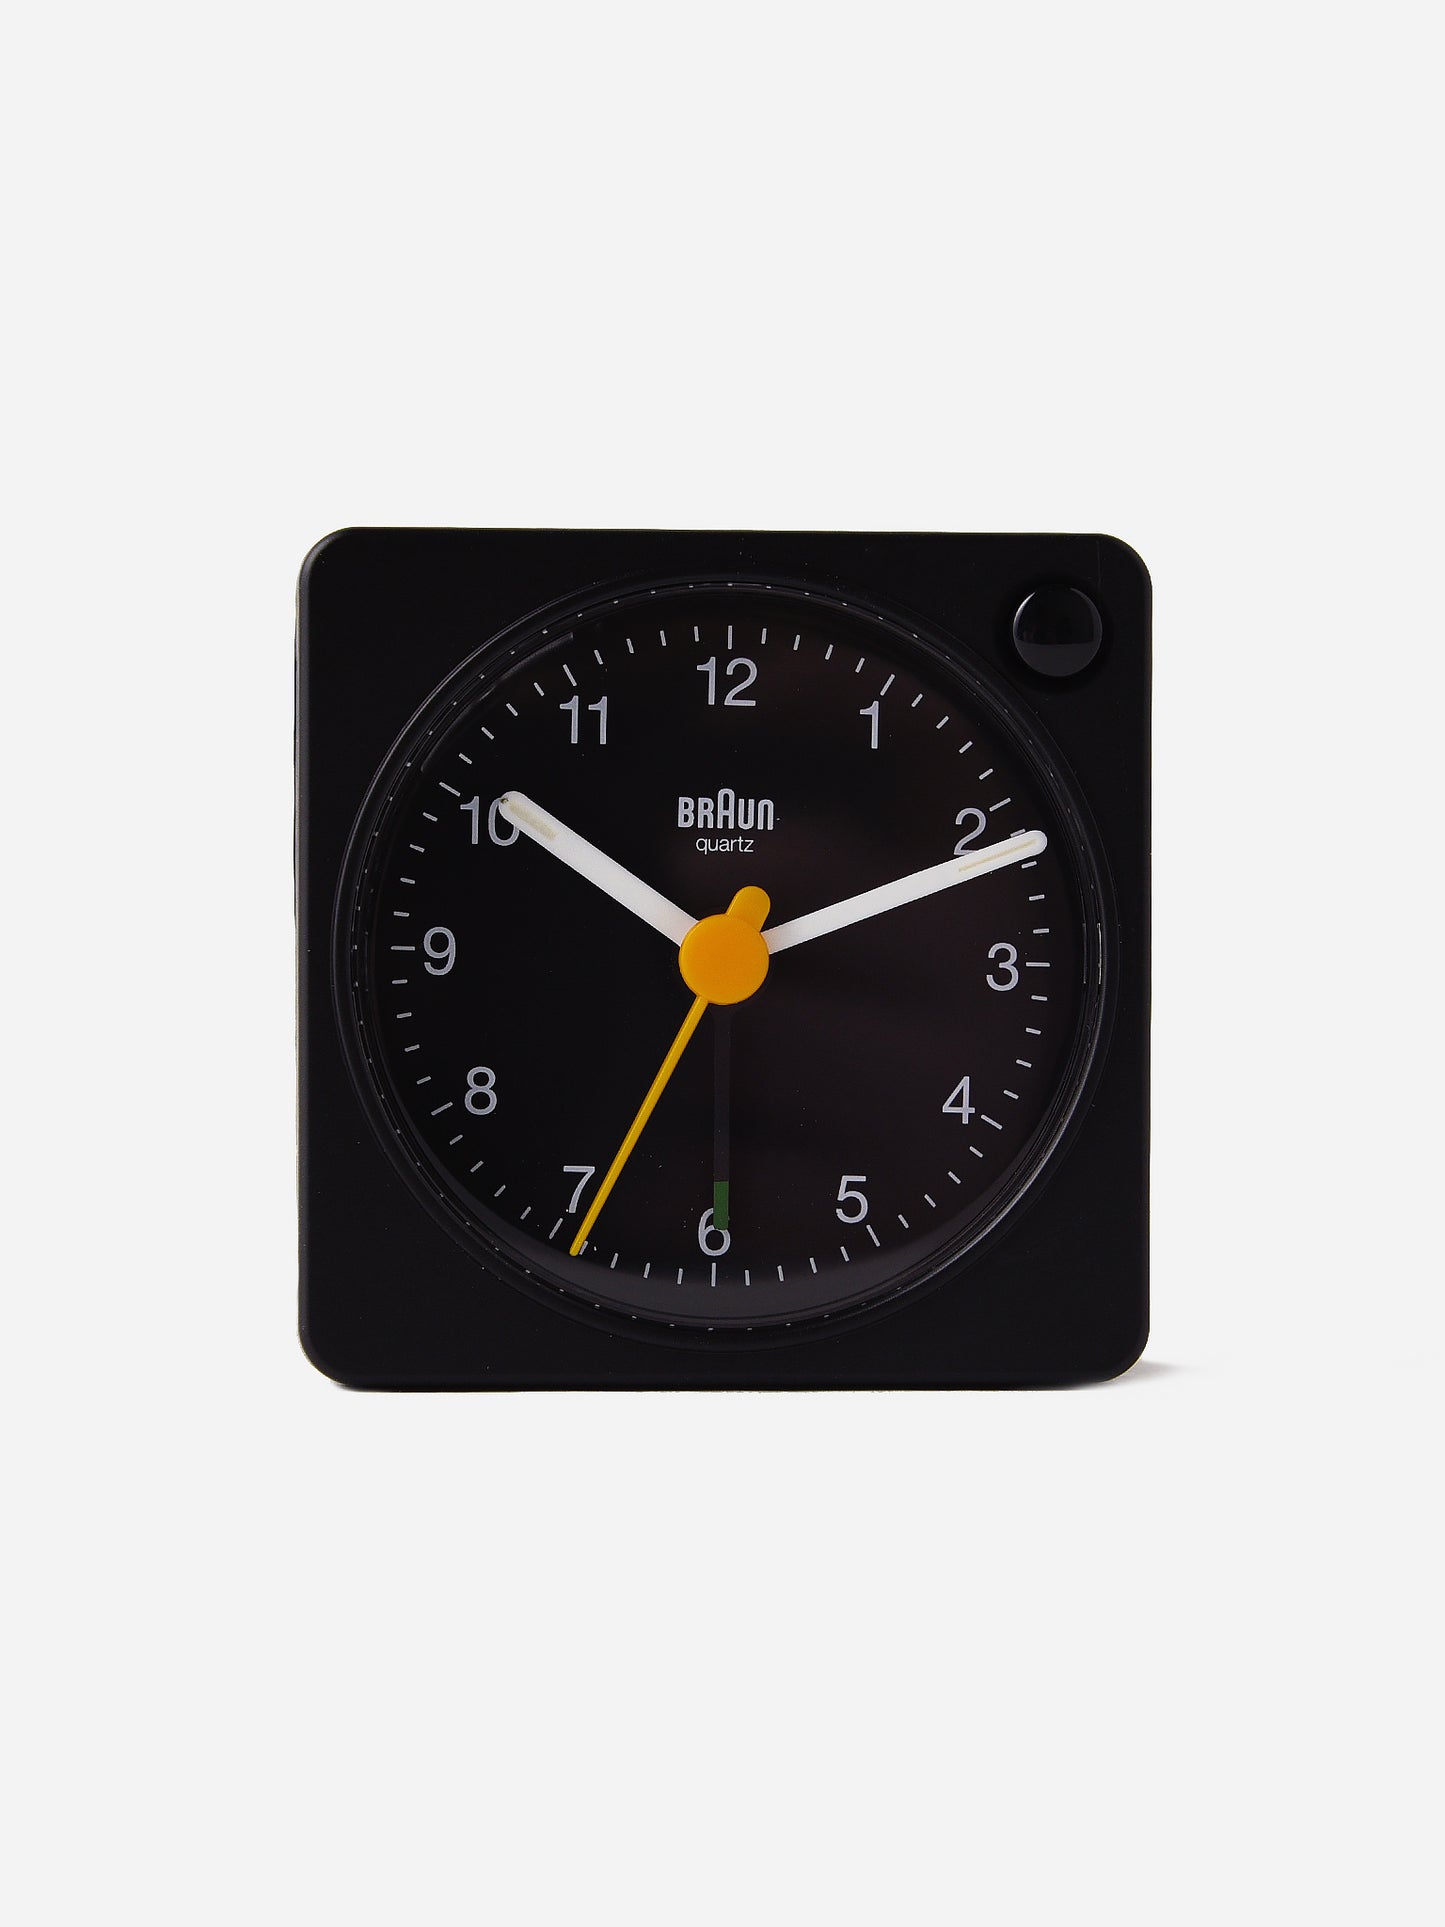 Braun Travel Analogue Alarm Clock